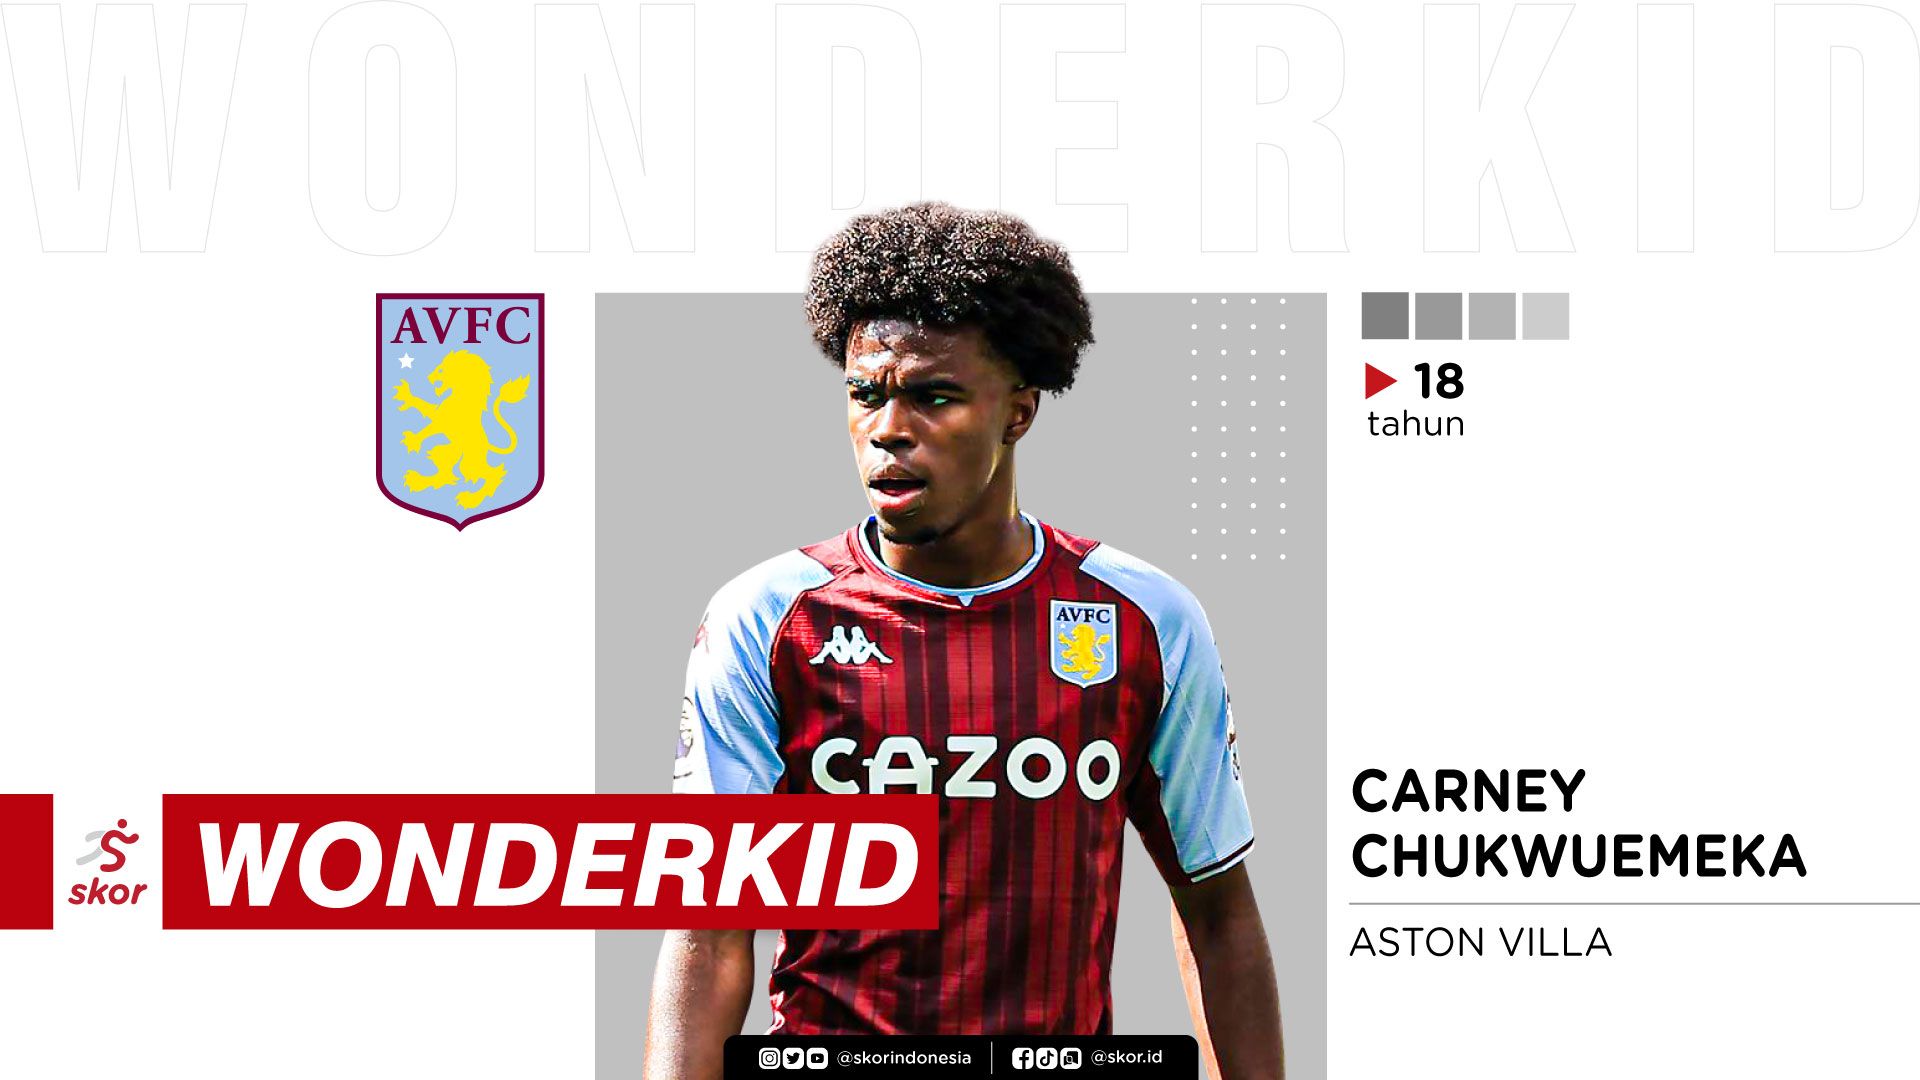 Carney Chukwuemeka, 18 Tahun (Aston Villa)